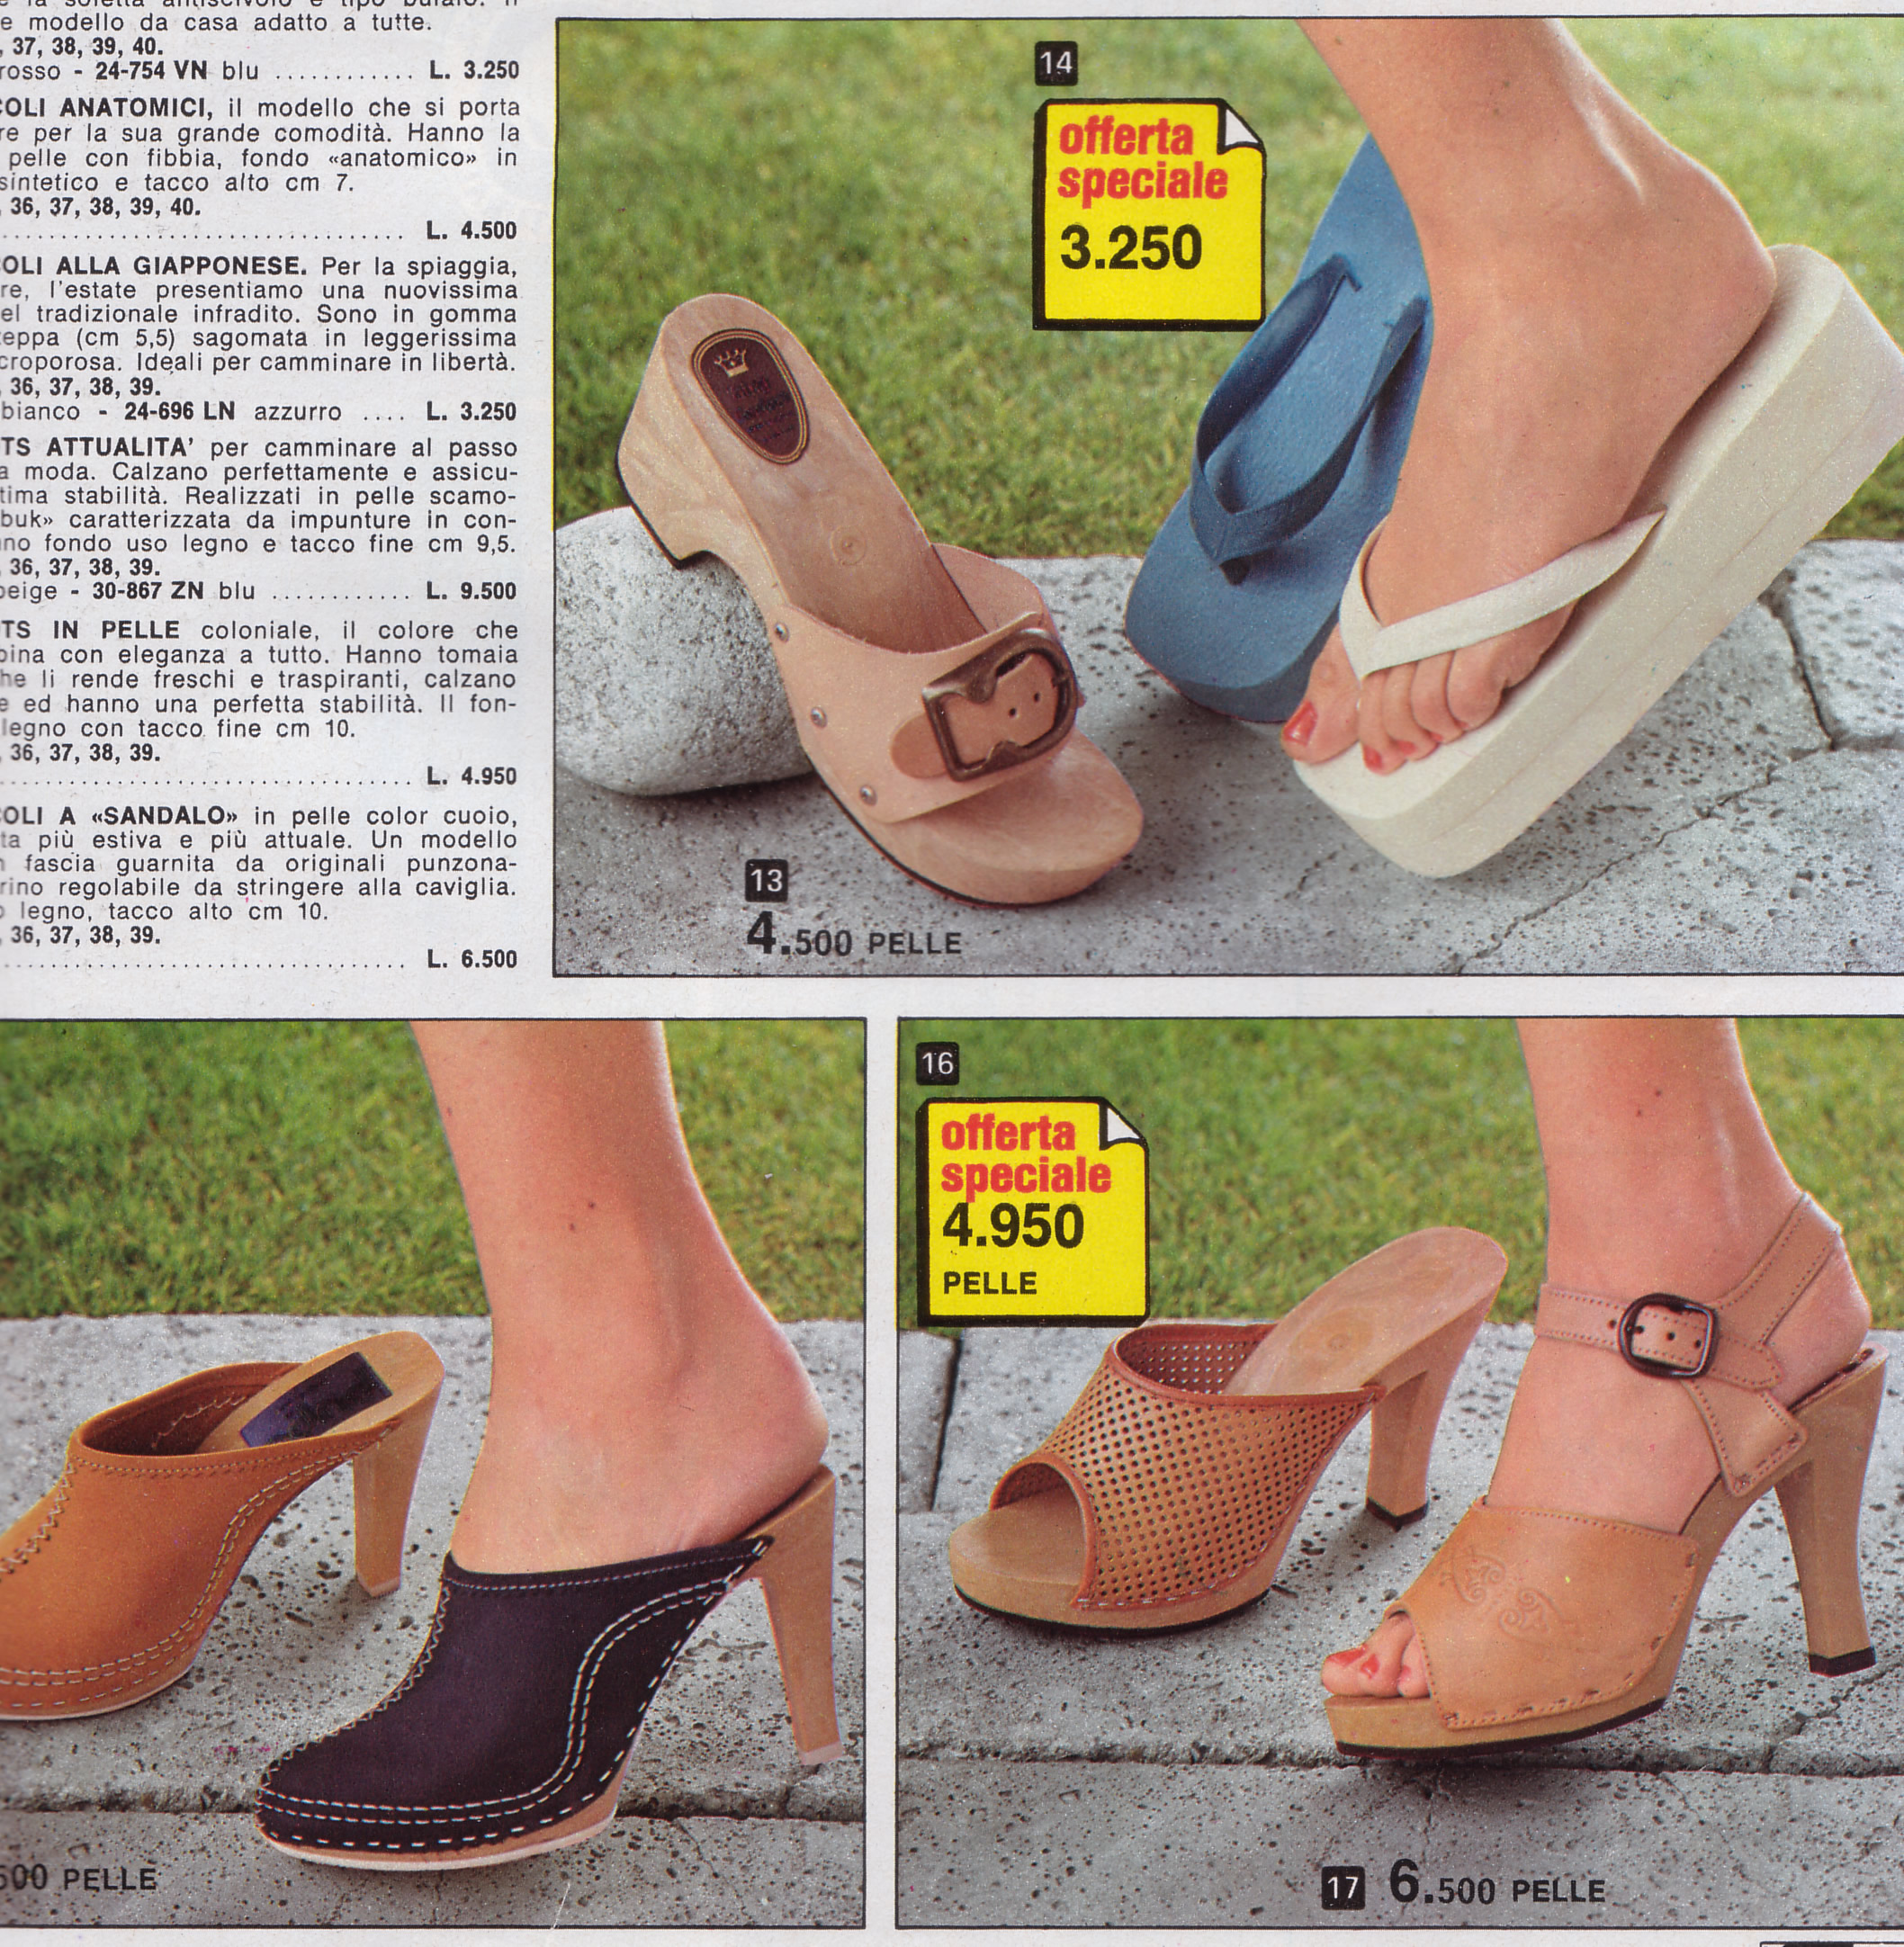 clogs-wooden-sandals-summer-1979